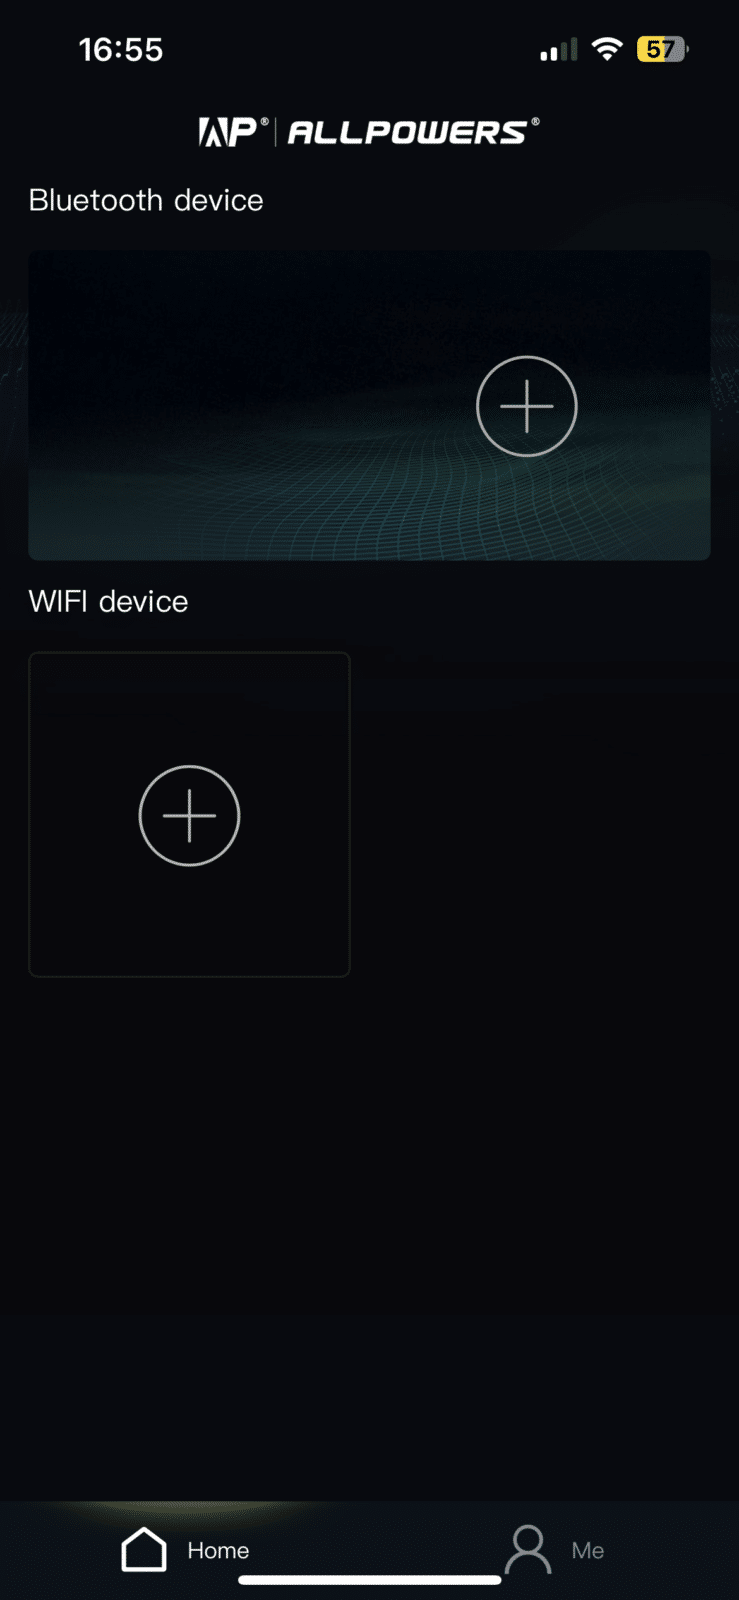 Capture d'écran de la page d'accueil de l'application, présentant une interface utilisateur intuitive